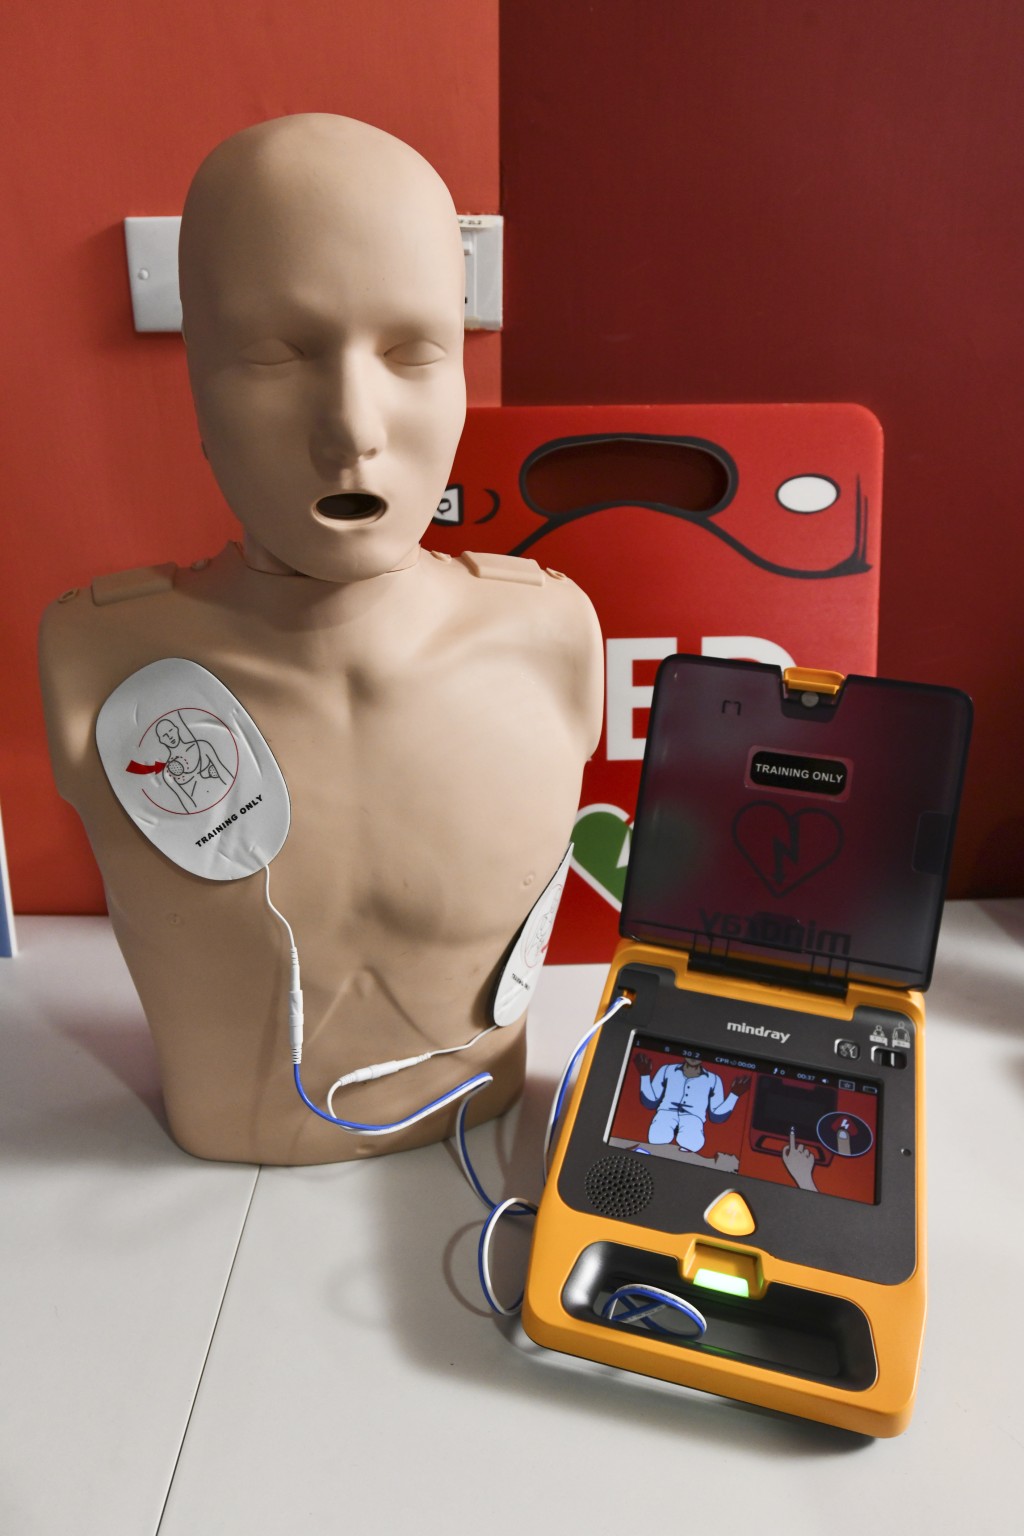 本港現時約有2,700部AED已登記在消防處的「AED搵得到」網上資訊平台。資料圖片